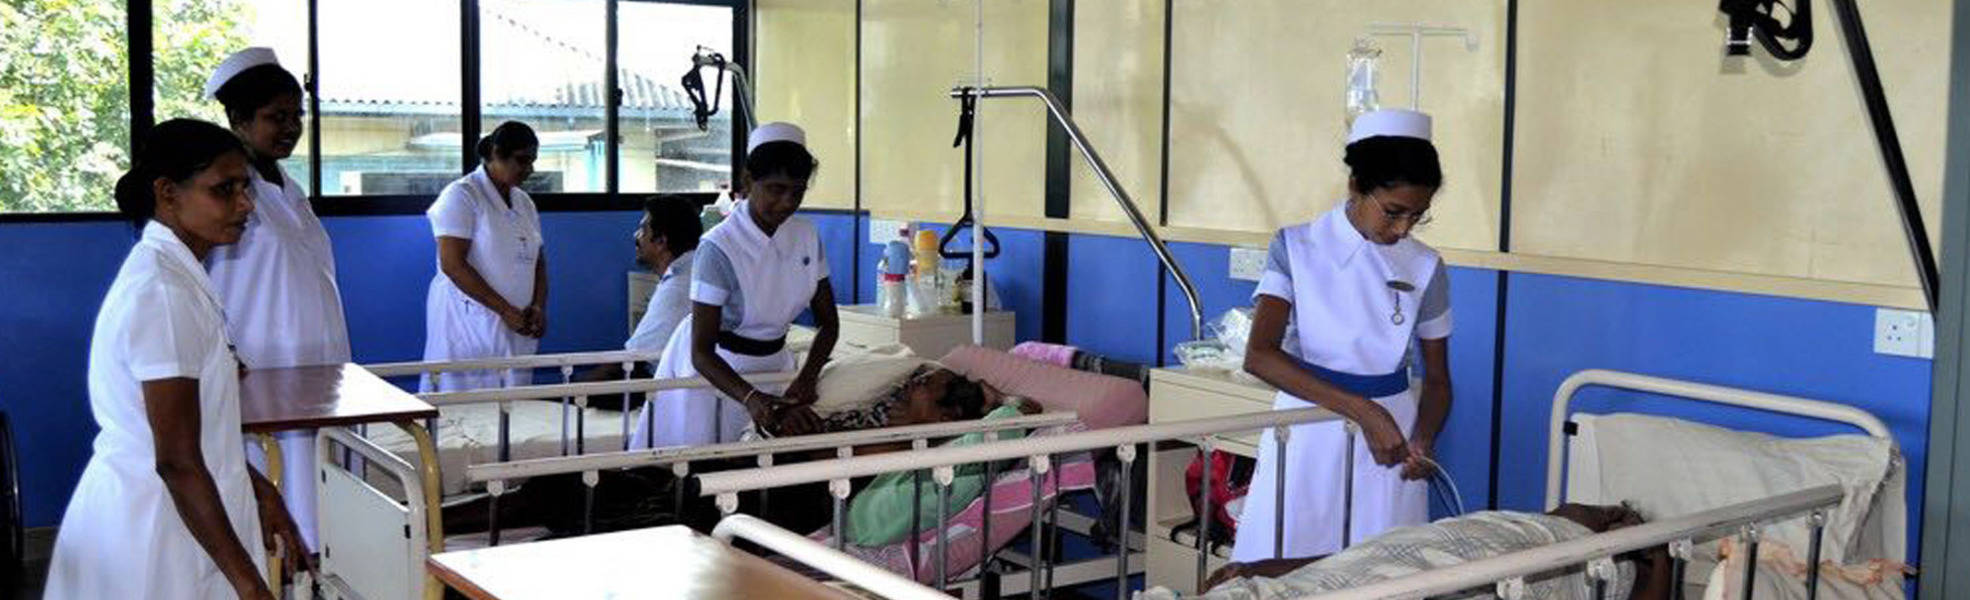 Nursing internship in a hospital in Sri Lanka